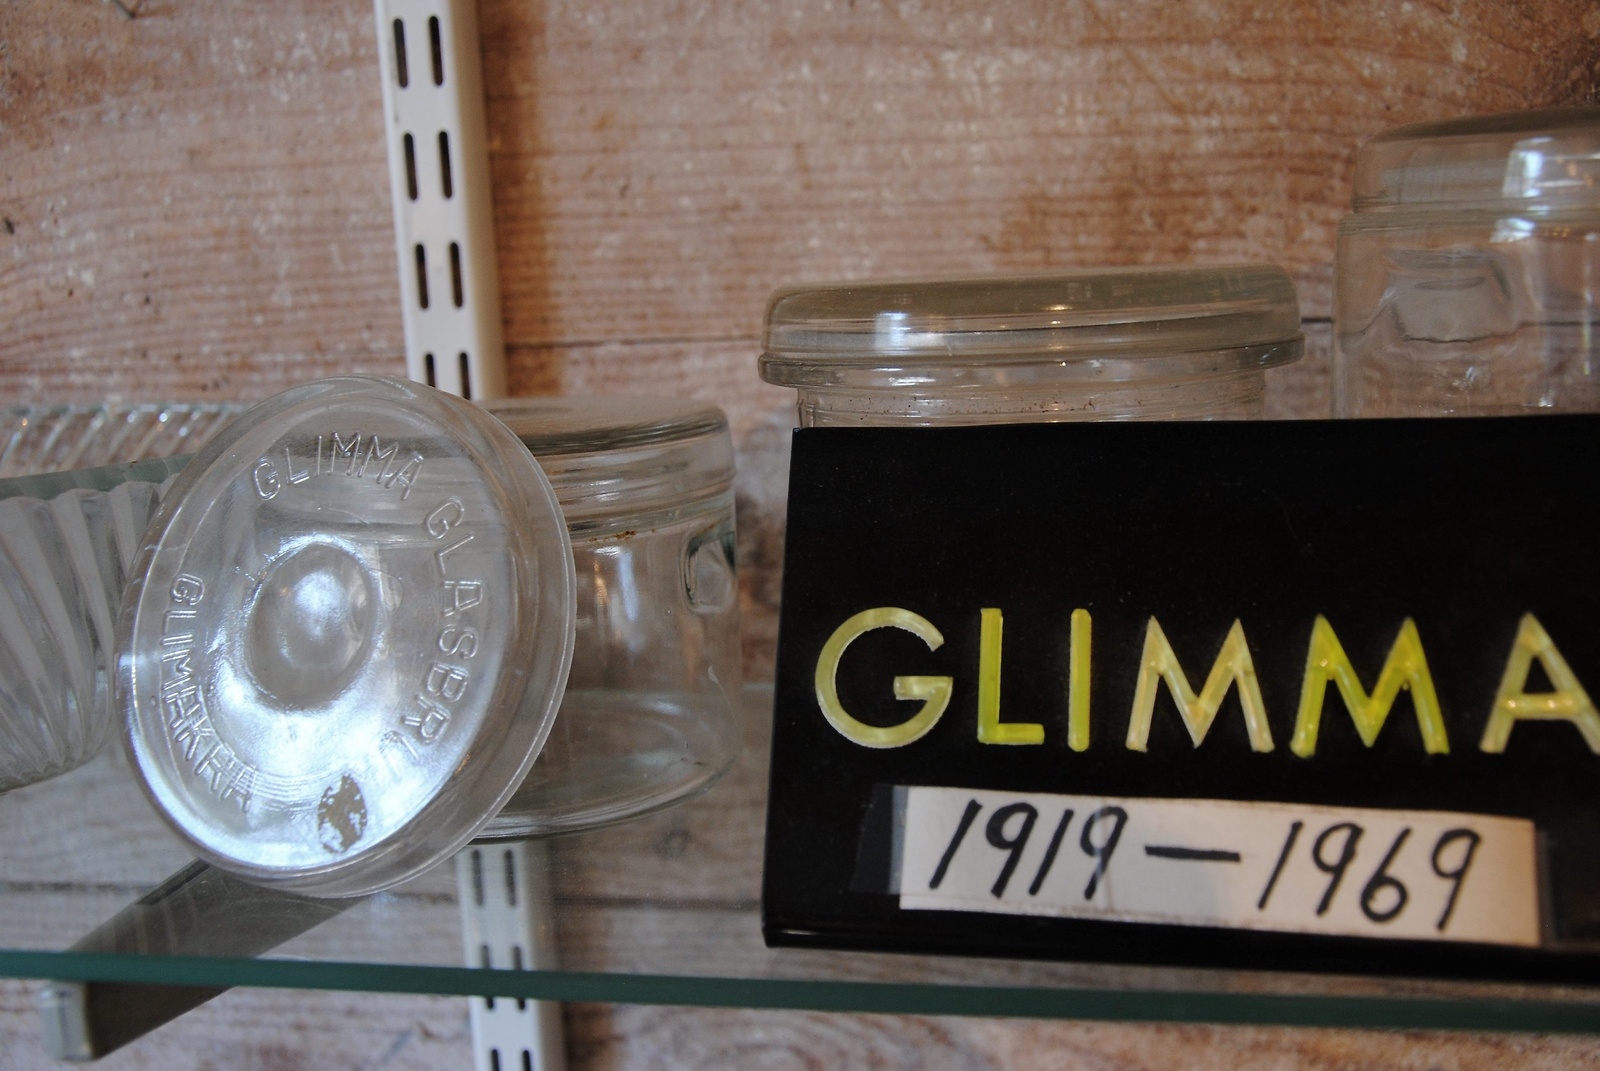 Glimåkra hembygdsförening visar glas från Glimma glasbruk, som lades ned 1967.                                    FOTO: SUSANNE GÄRE